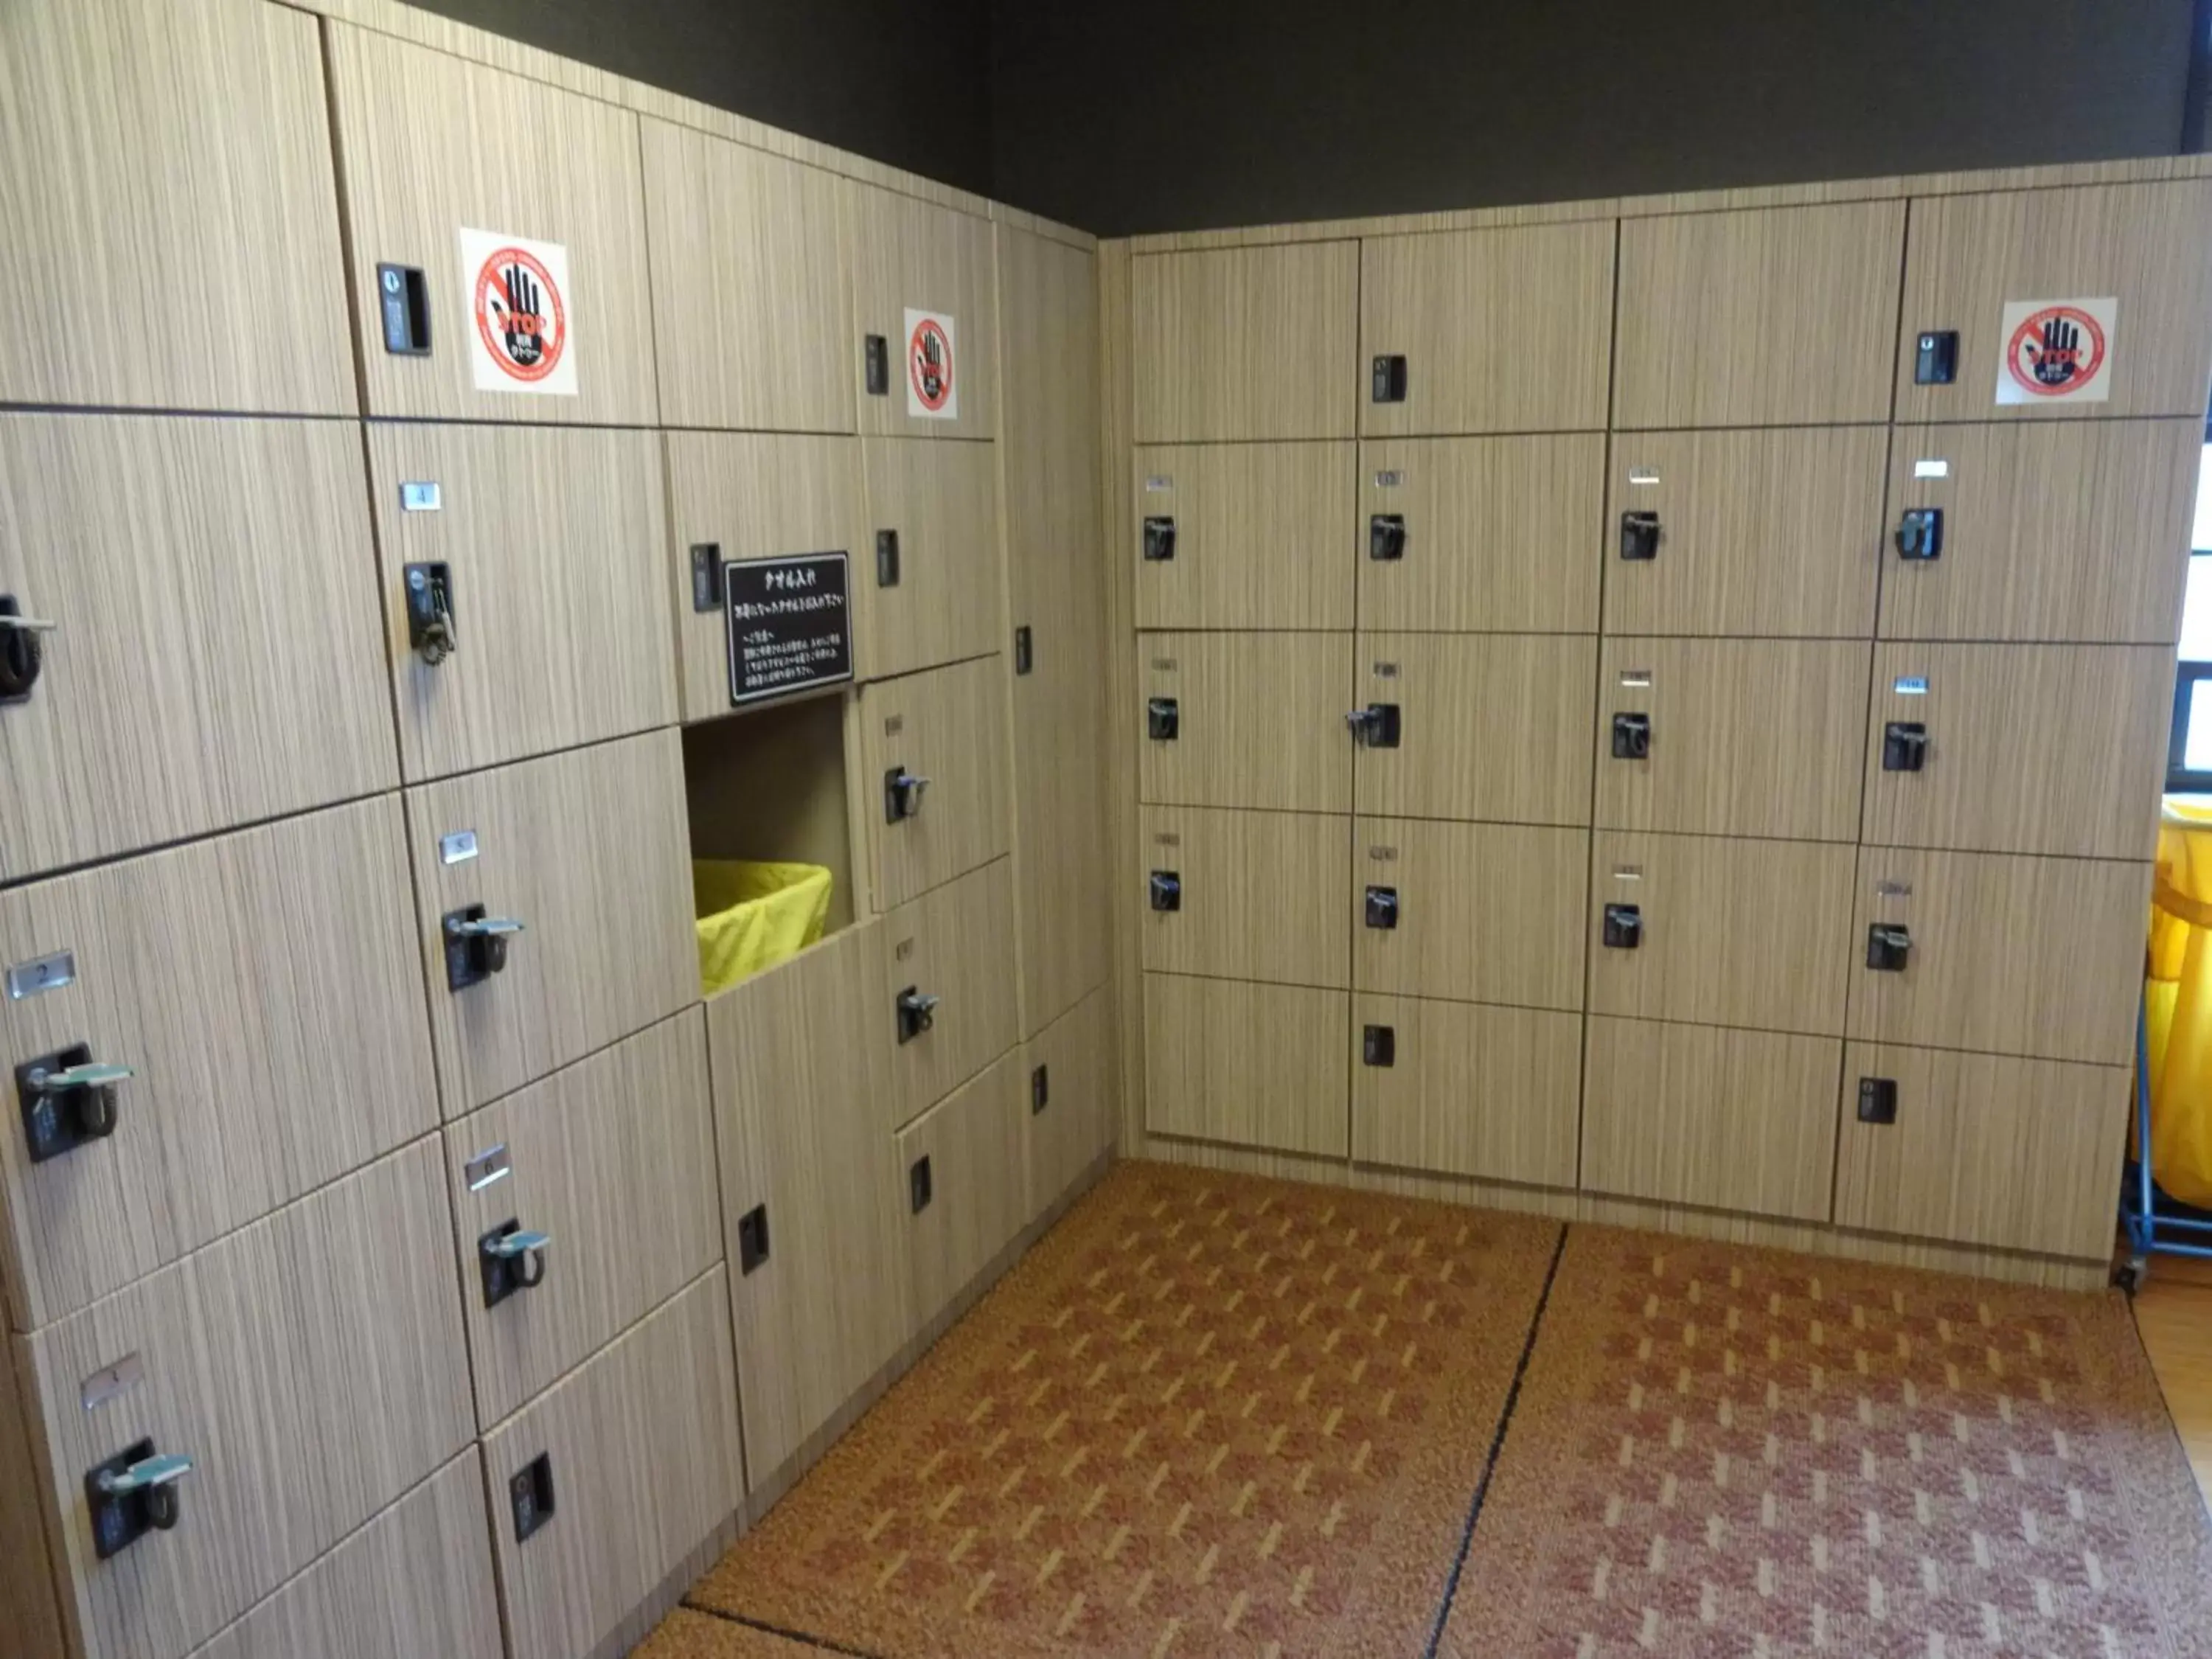 Spa and wellness centre/facilities, Bathroom in Dormy Inn Hakata Gion